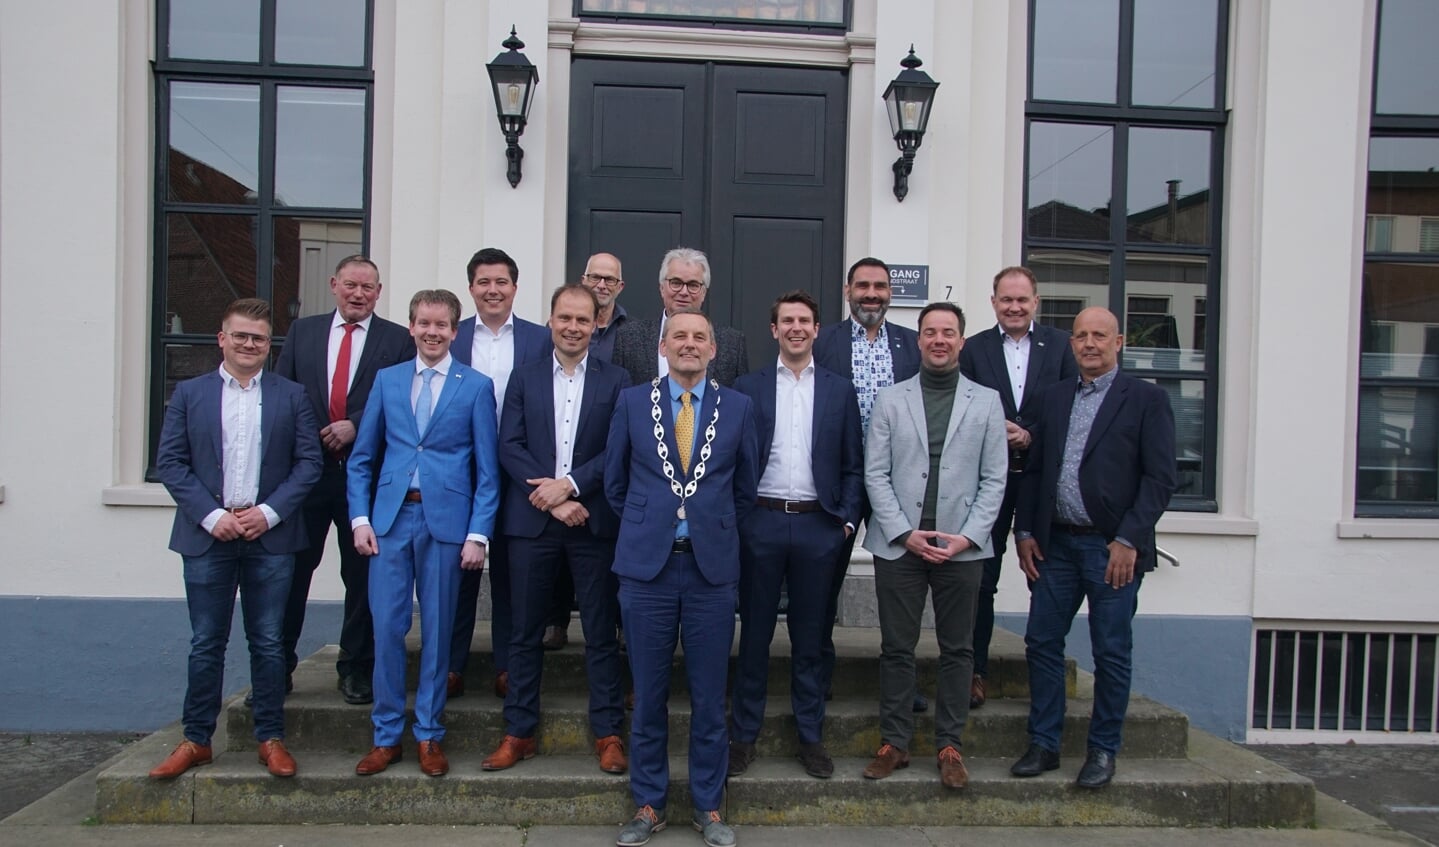 Dertien heren in de gemeenteraad met burgemeester Stapelkamp. Foto: Frank Vinkenvleugel